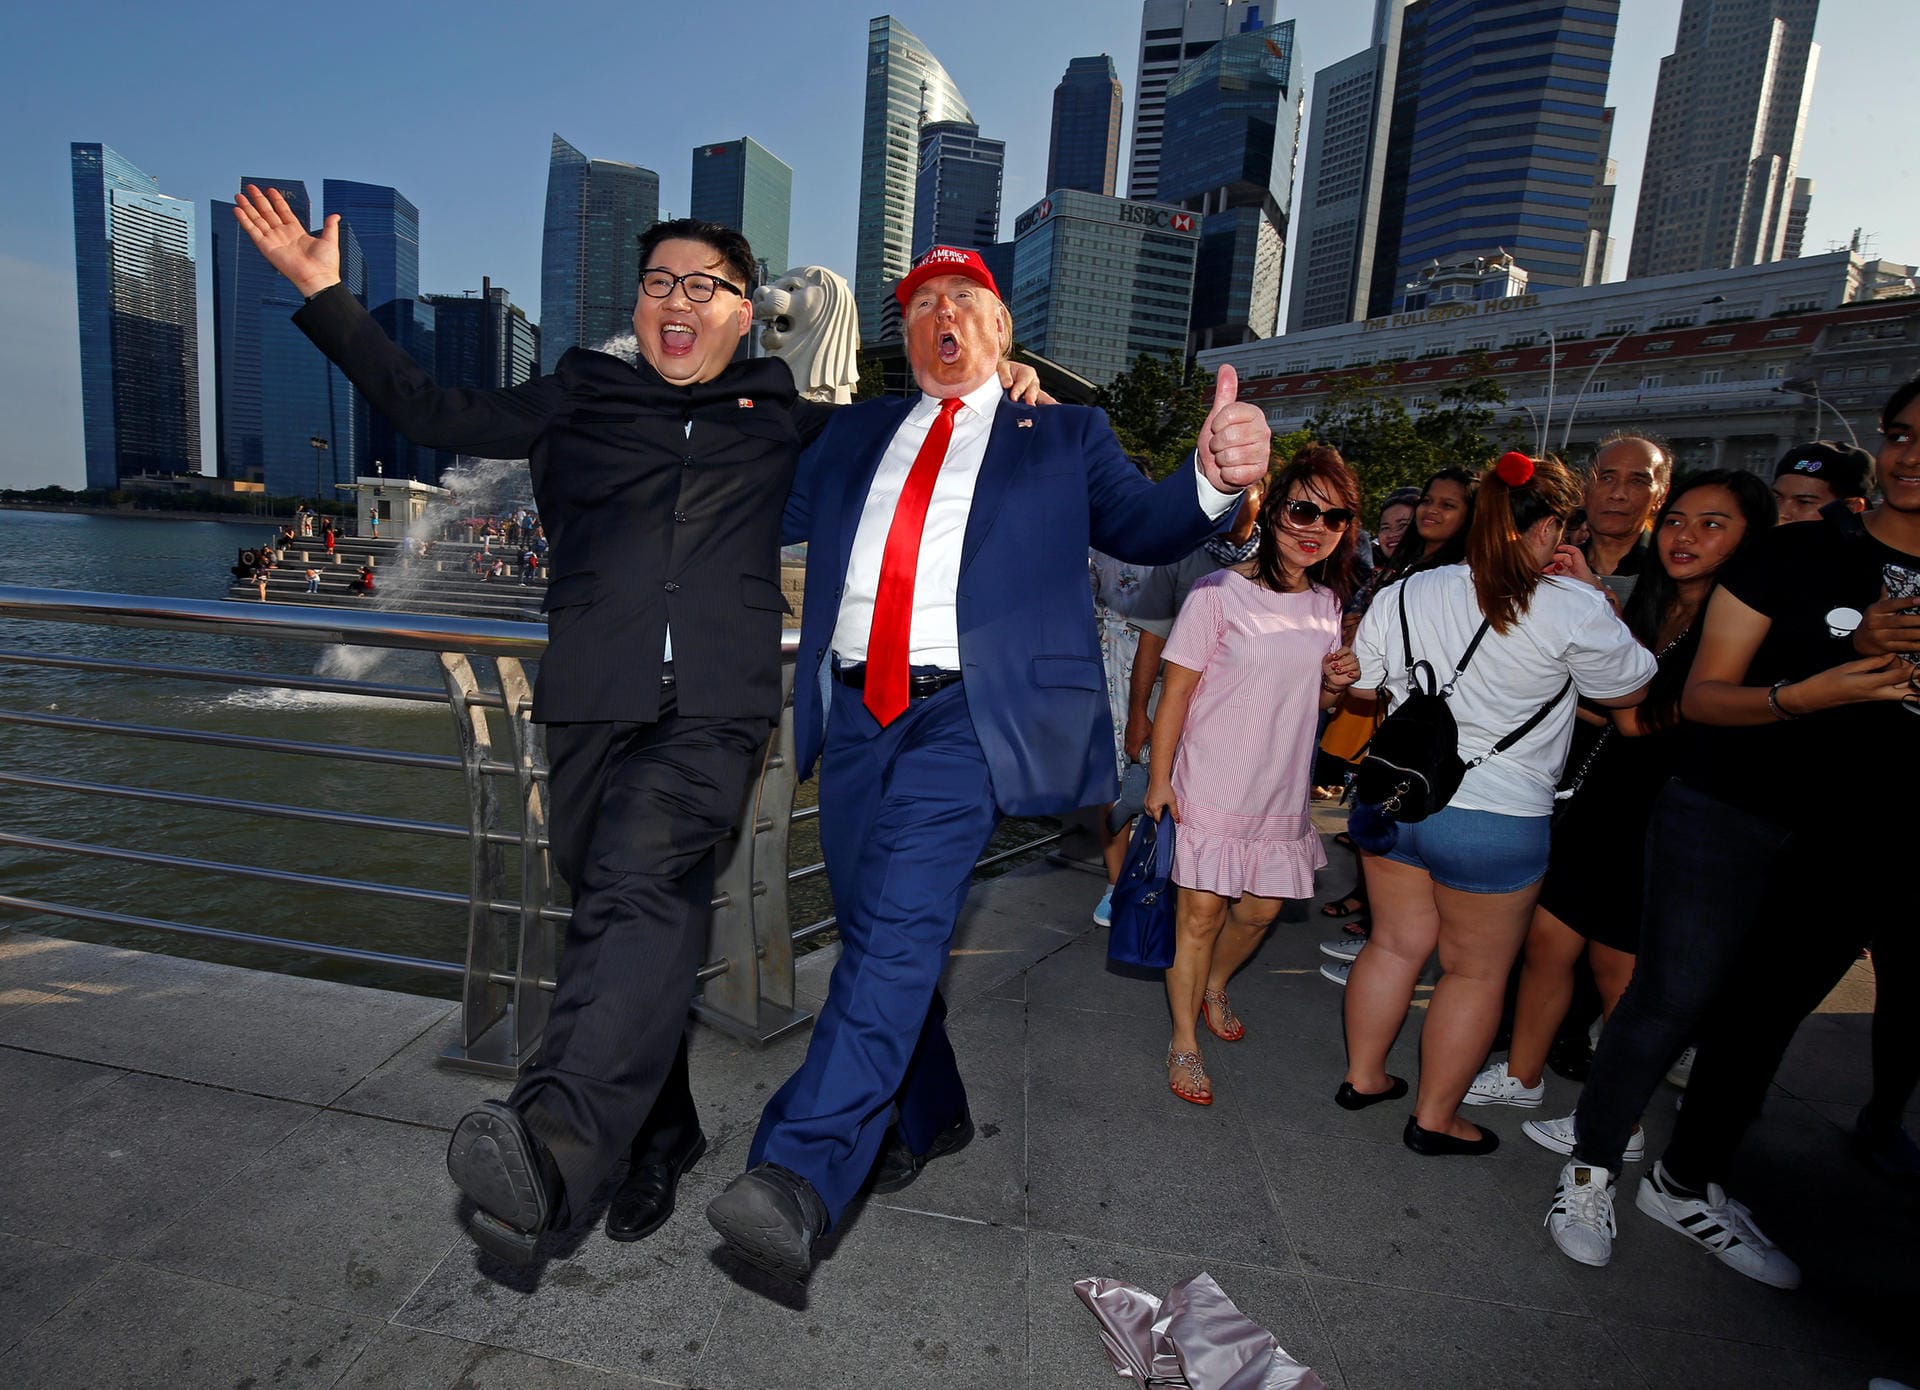 Doppelgänger: Howard (li.) und Dennis Alan (re.) posieren als Donald Trump und Kim Jong Un in Singapur.